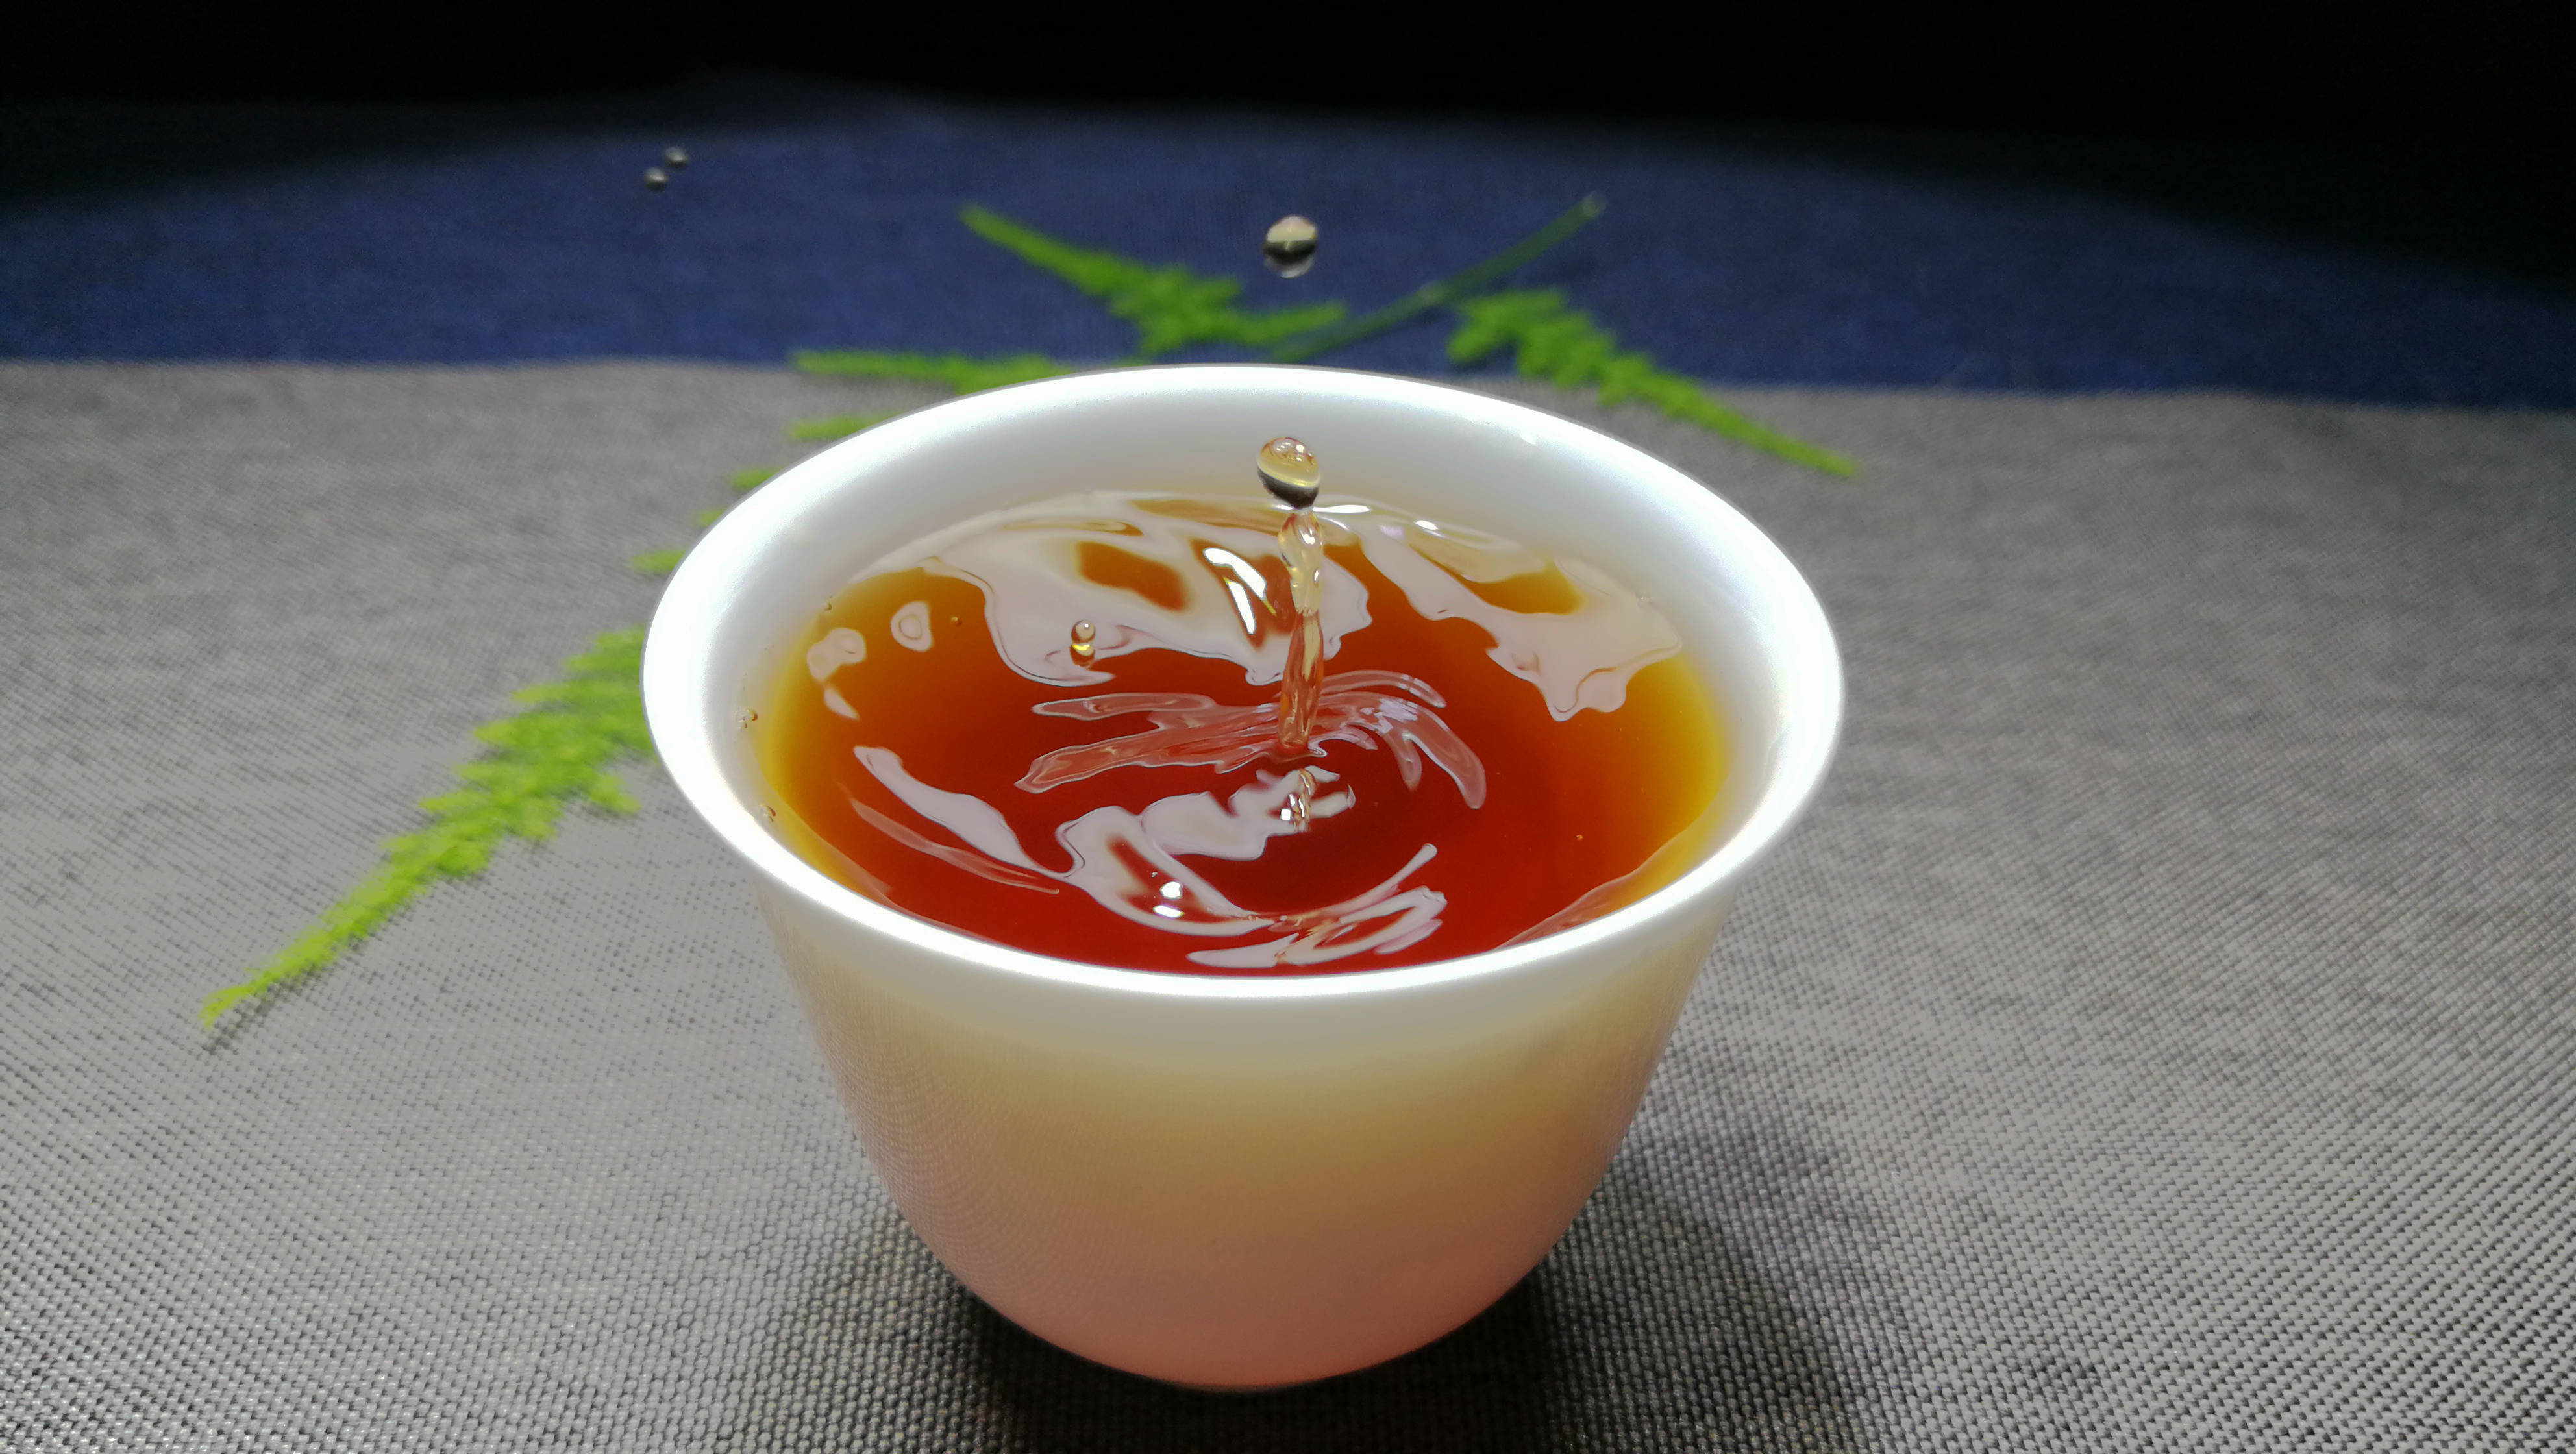 茶汤的粘稠度和后期转化有没有关系呢?